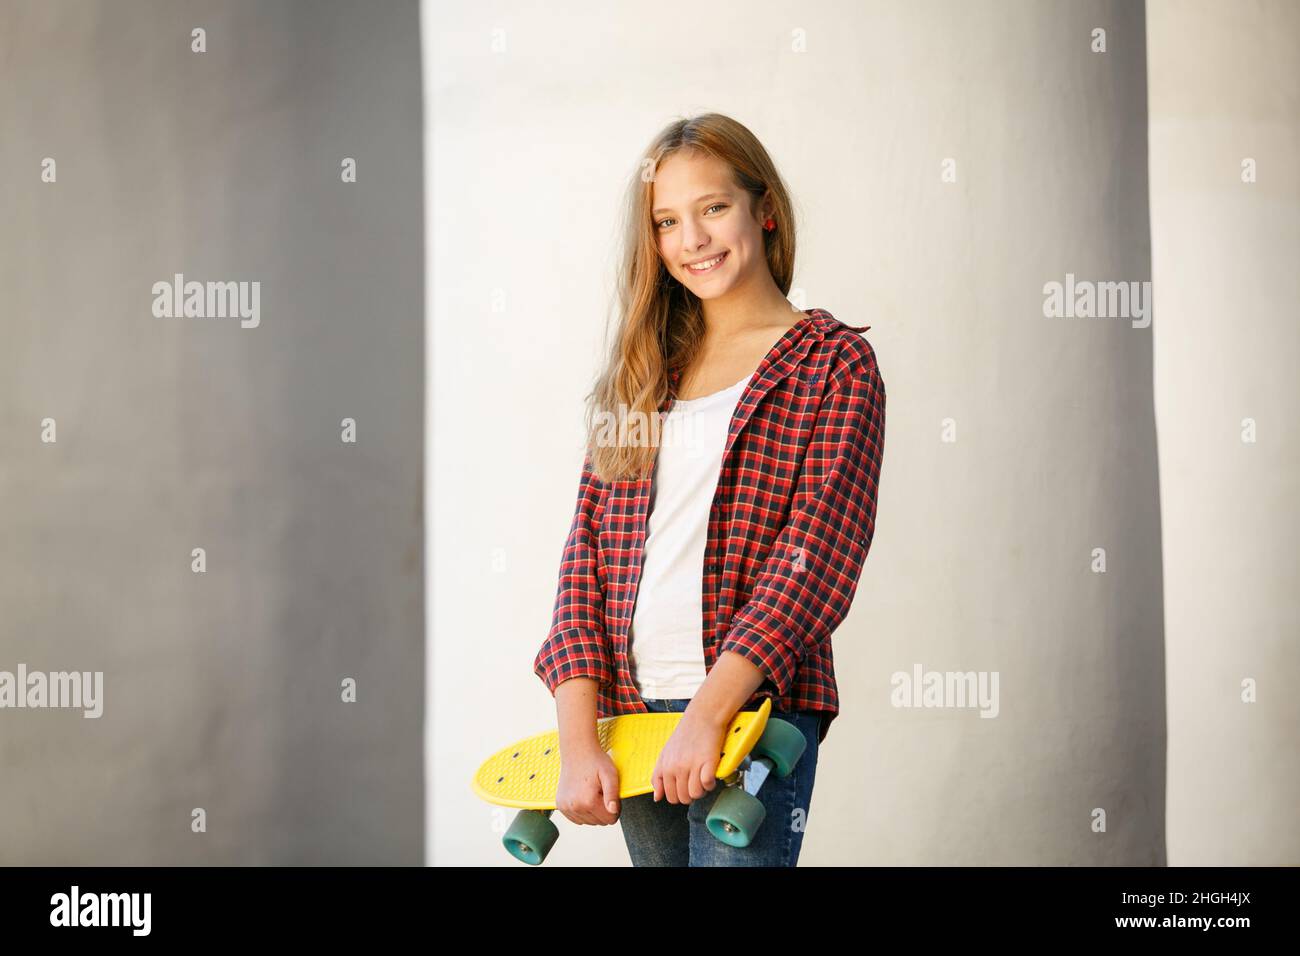 Portrait extérieur horizontal de style de vie d'une jeune fille adolescente souriante avec un skateboard jaune portant une chemise à carreaux rouge Banque D'Images